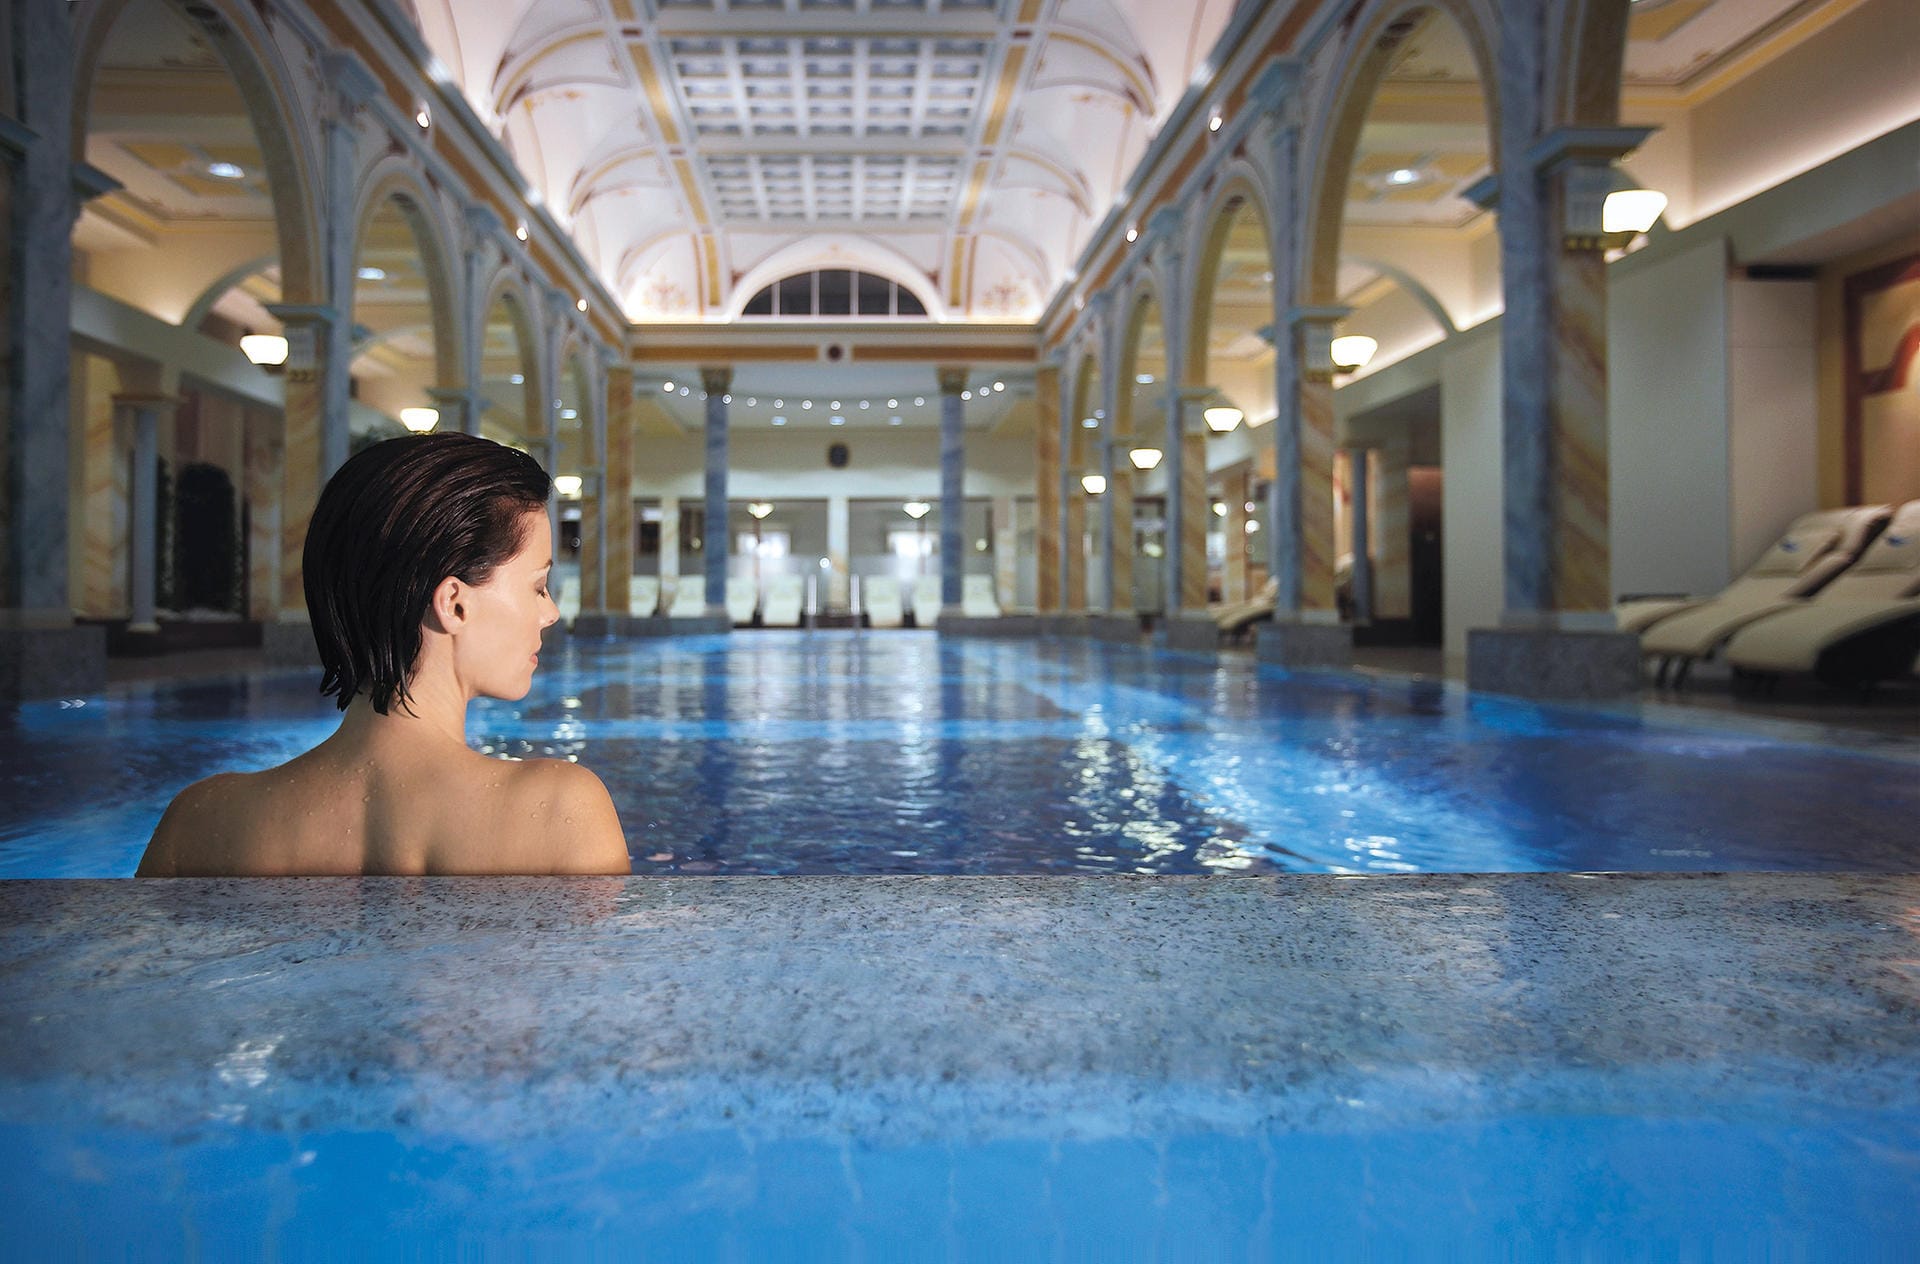 Richtig verwöhnen lassen können Sie sich bei der "36.5° Thermal Water Collection" im Grand Resort Bad Ragaz in der Schweiz. Ein Tagesprogramm ohne Übernachtung kostet laut Anbieter 495 Schweizer Franken (rund 465 Euro).